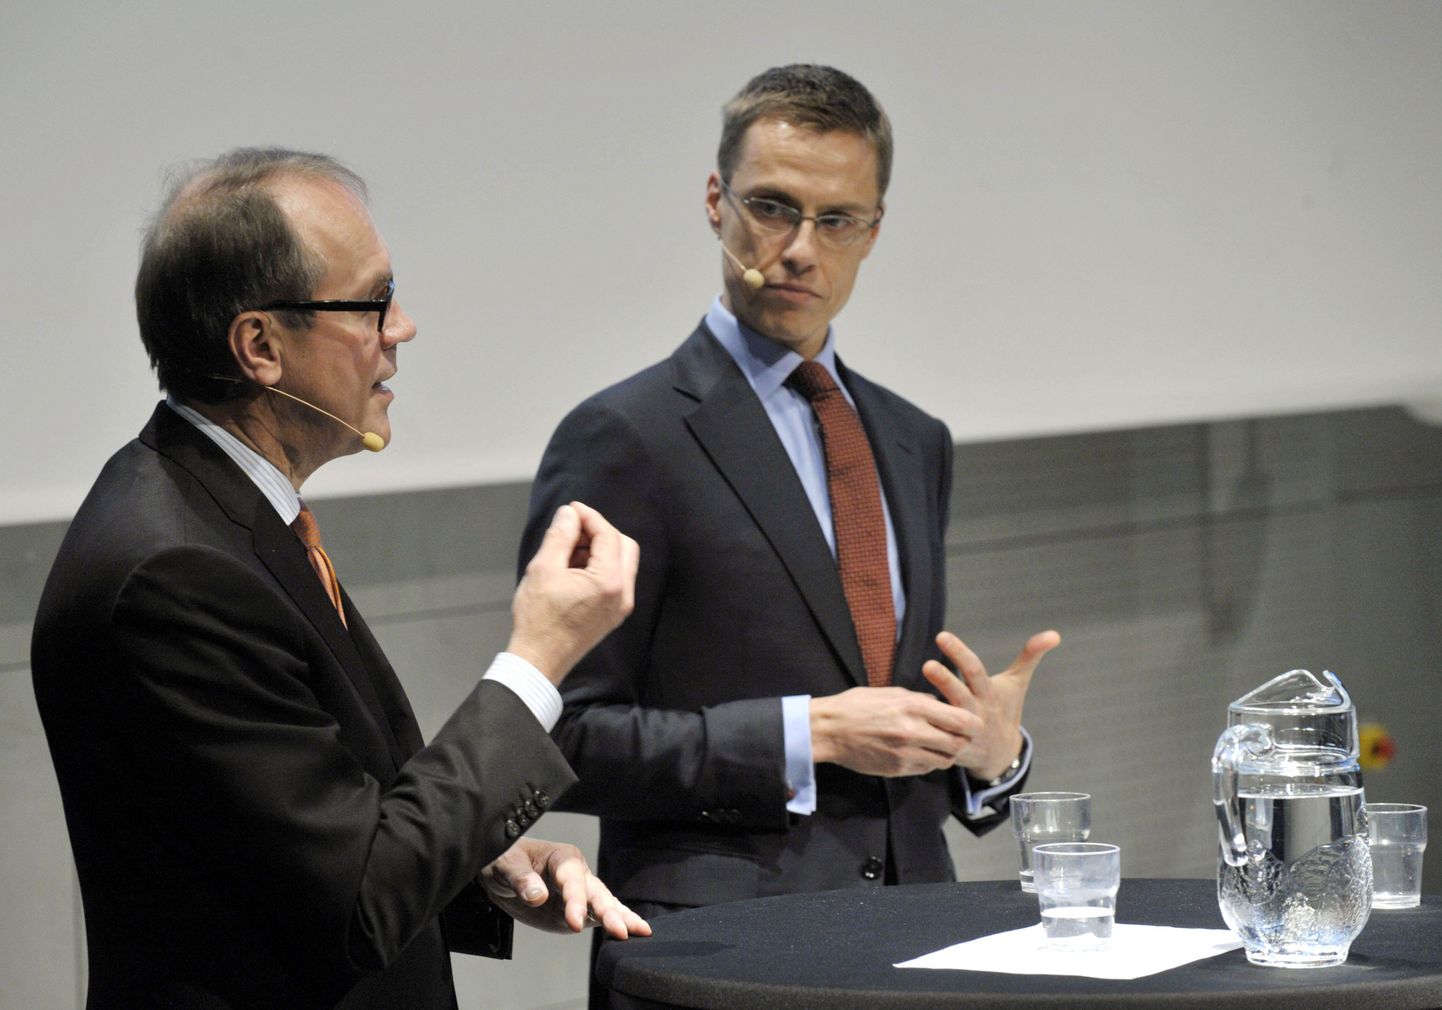 Soome välisminister Alexander Stubb (paremal) ja Jorma Ollila tutvustamas mainekujundusraportit.